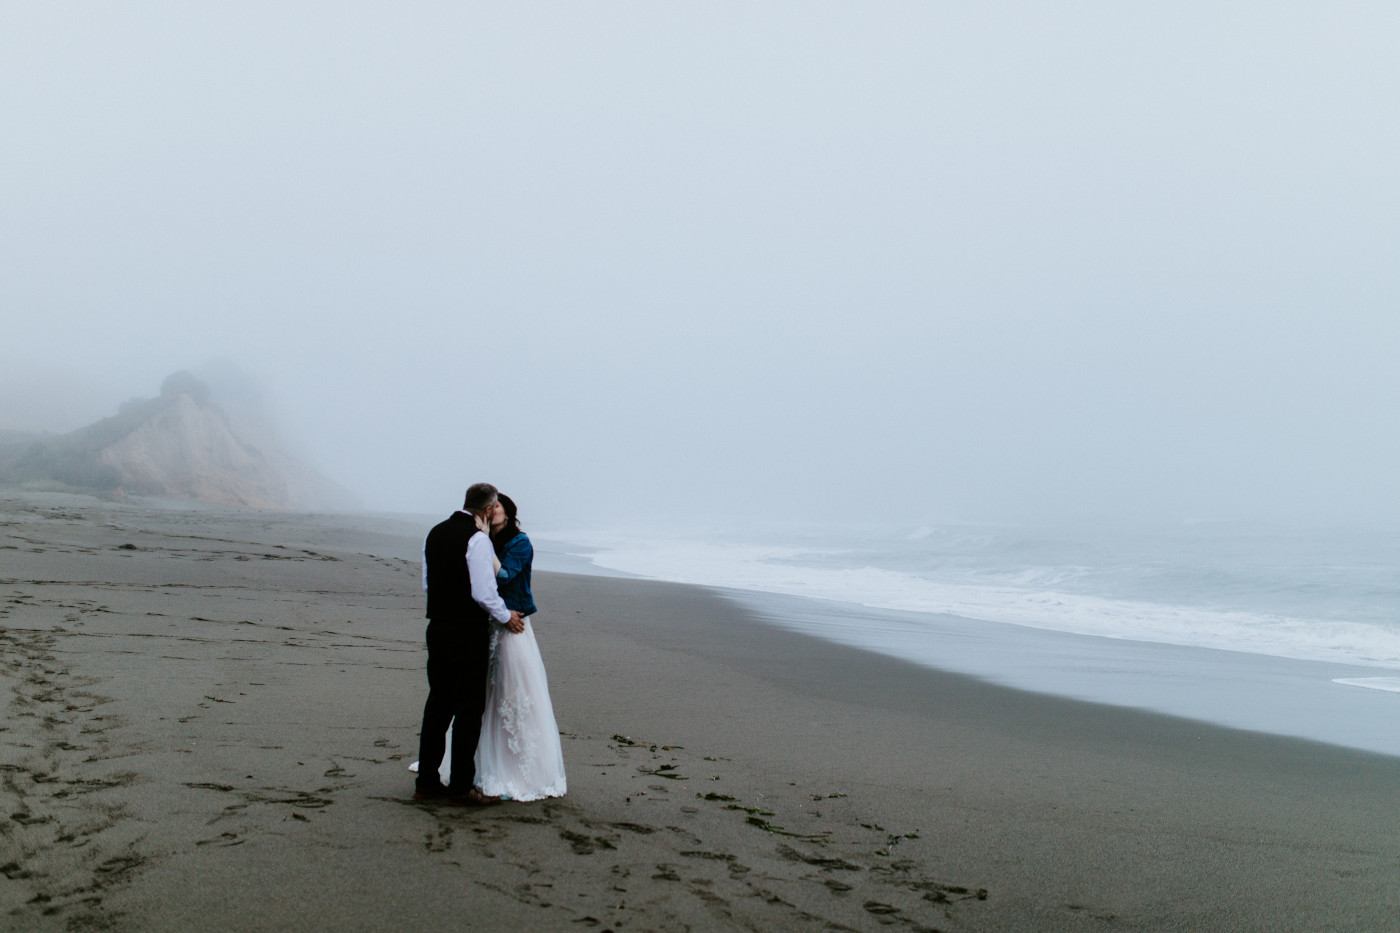 Tim and Hannah kiss on the beach.